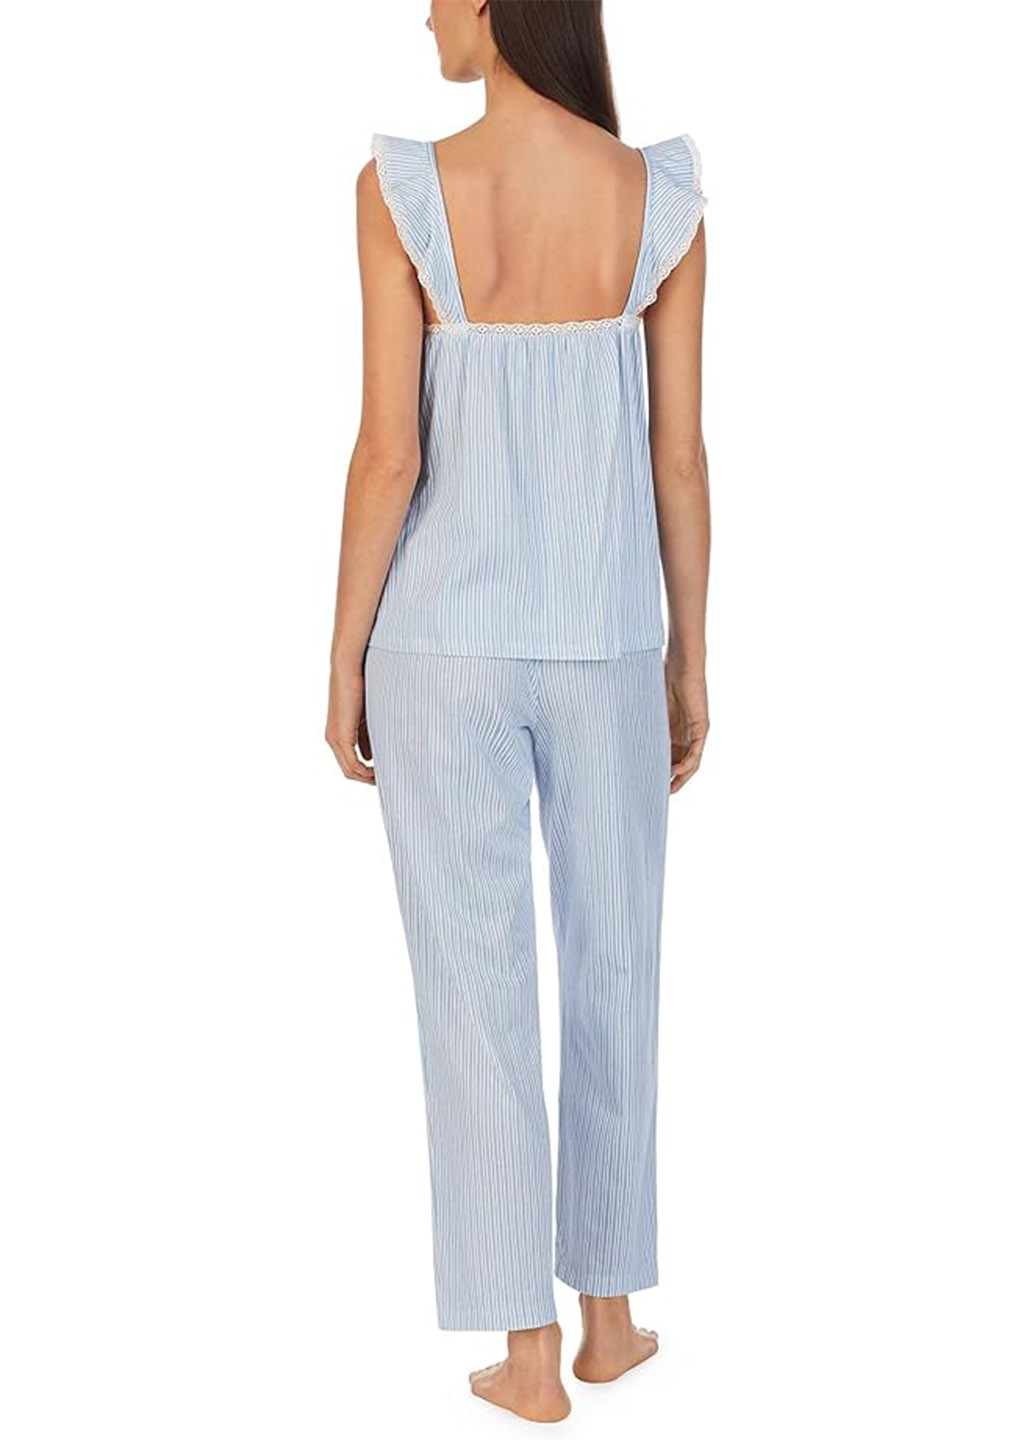 Голубая всесезон пижама (топ, брюки) топ + брюки Ralph Lauren